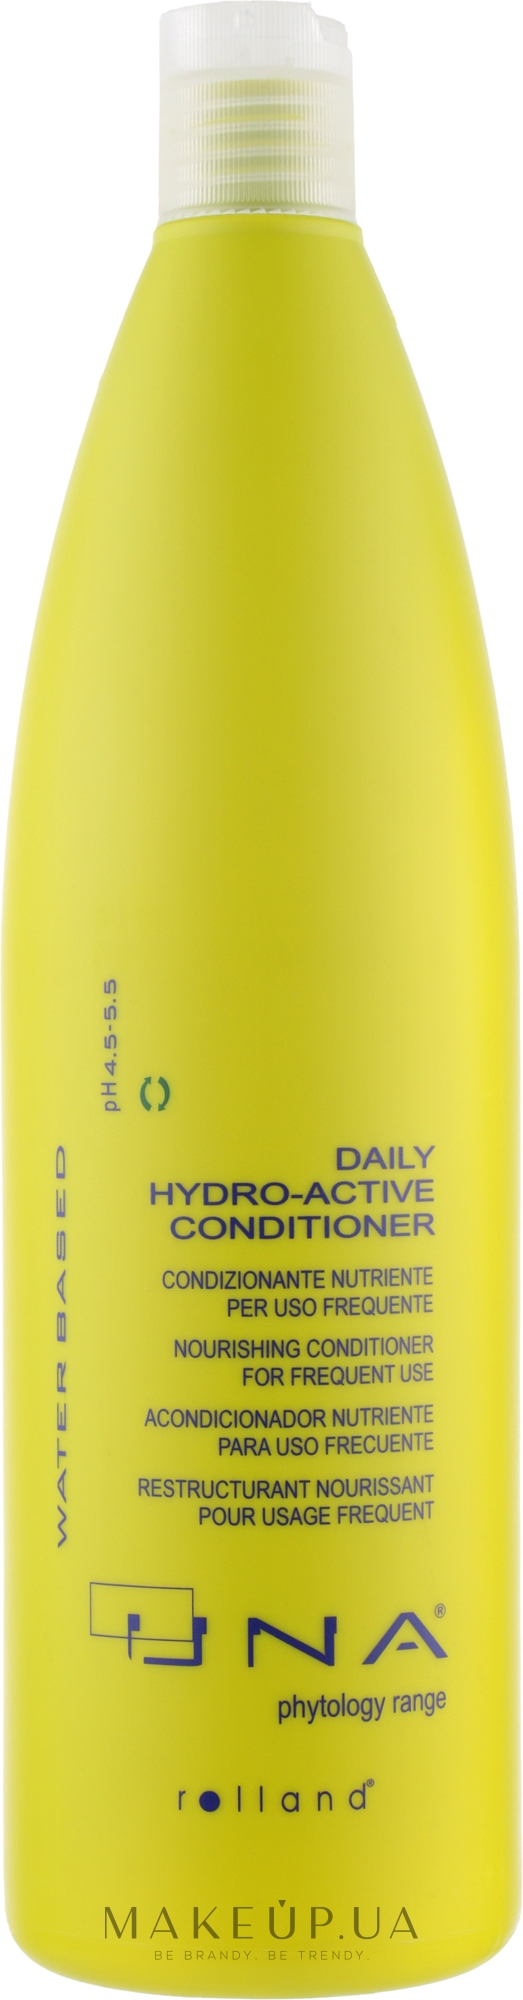 Кондиціонер гідровідновлювальний для будь-якого типу волосся - Rolland Una Daily Hydro-Active Conditioner — фото 1000ml